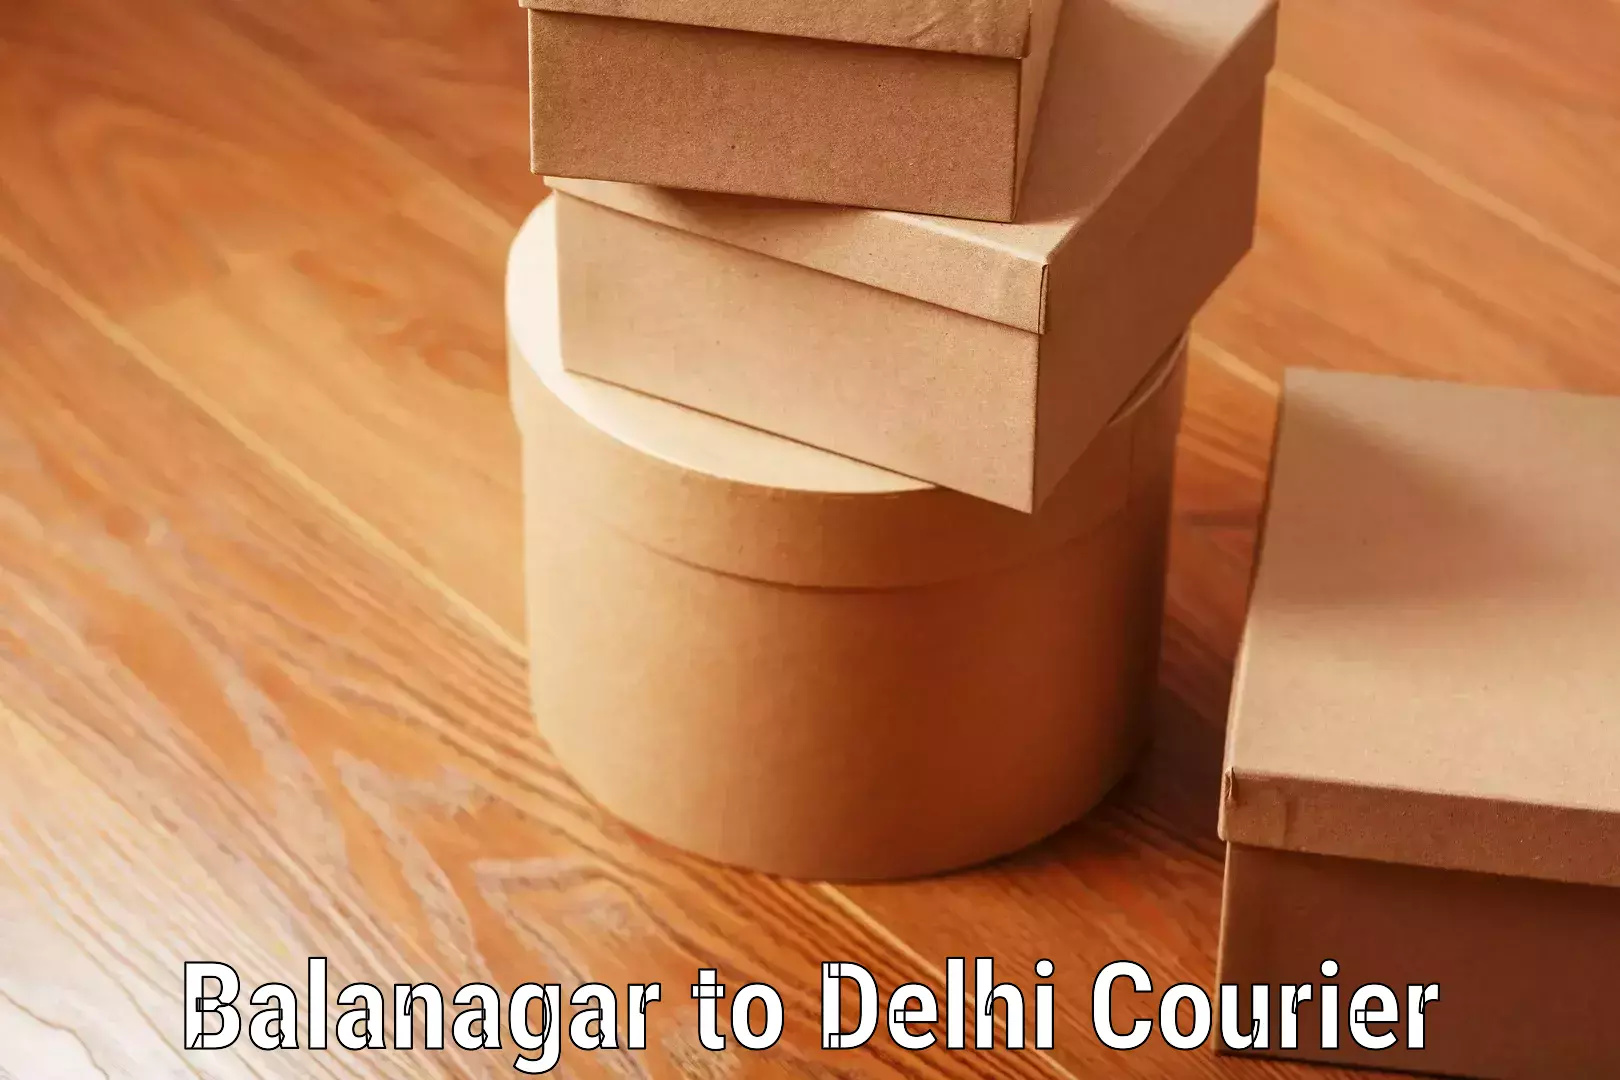 Bulk luggage shipping Balanagar to Delhi